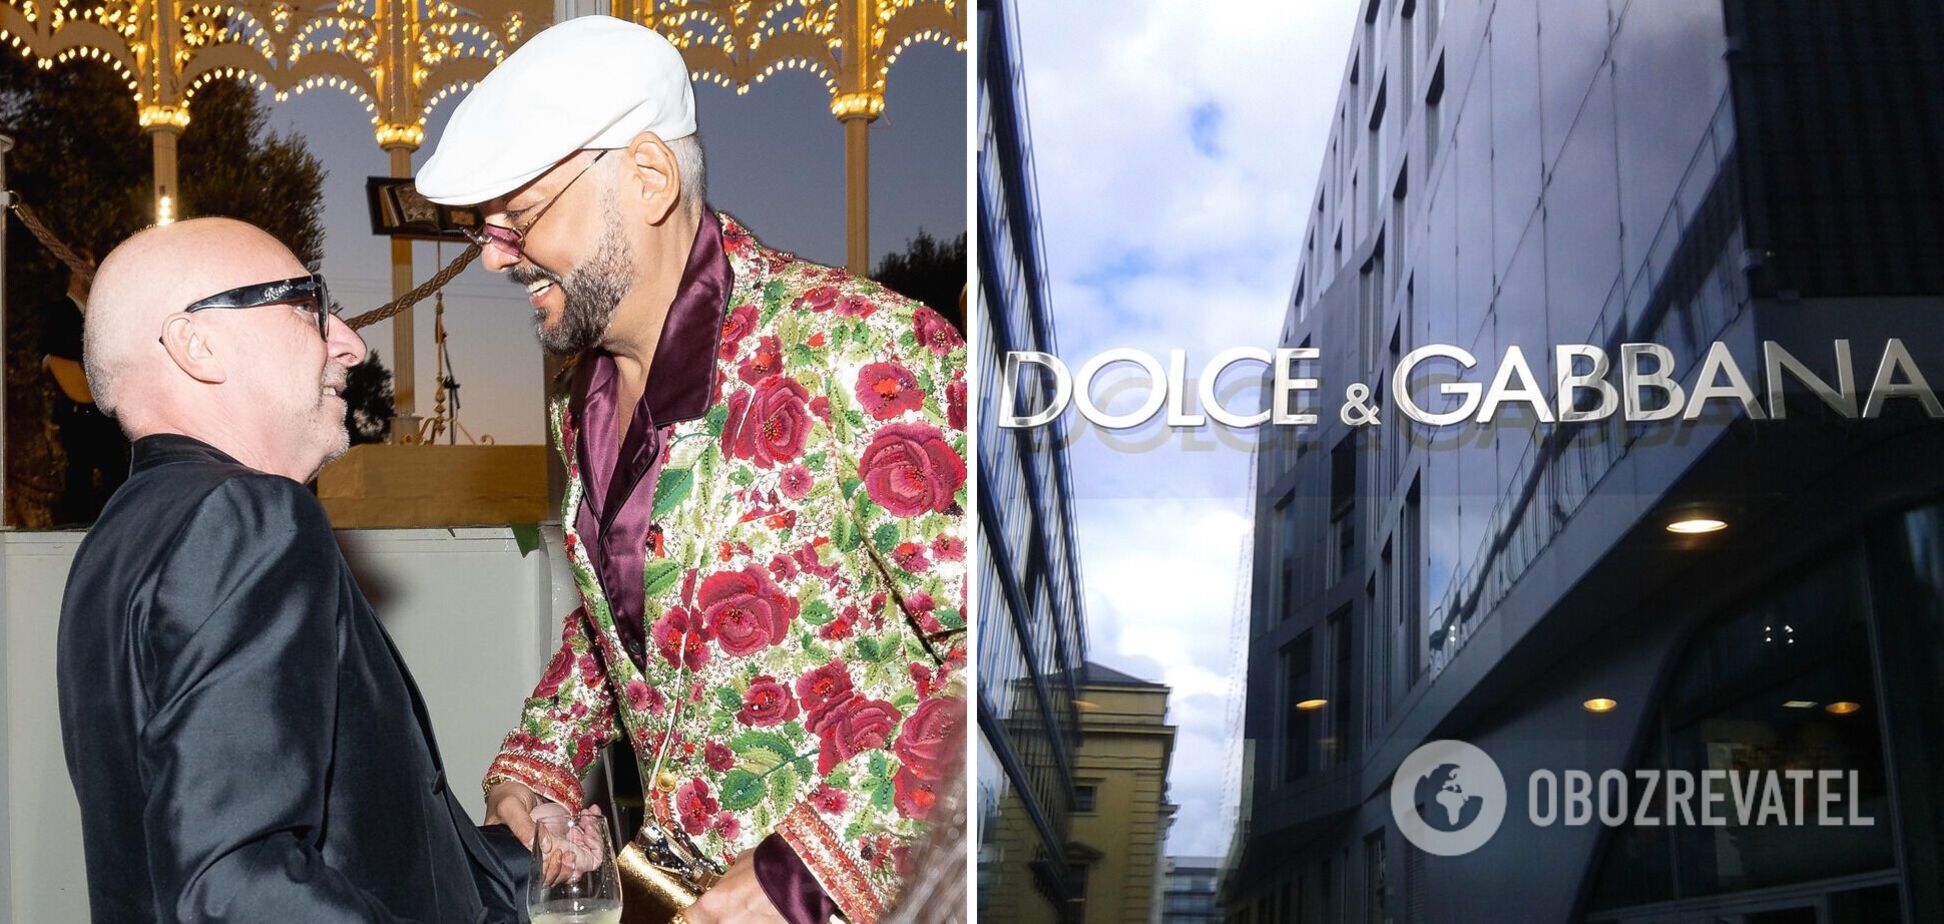 Dolce & Gabbana попали в пророссийский скандал: Киркоров показал, как бренд и его гости уважают путинистов